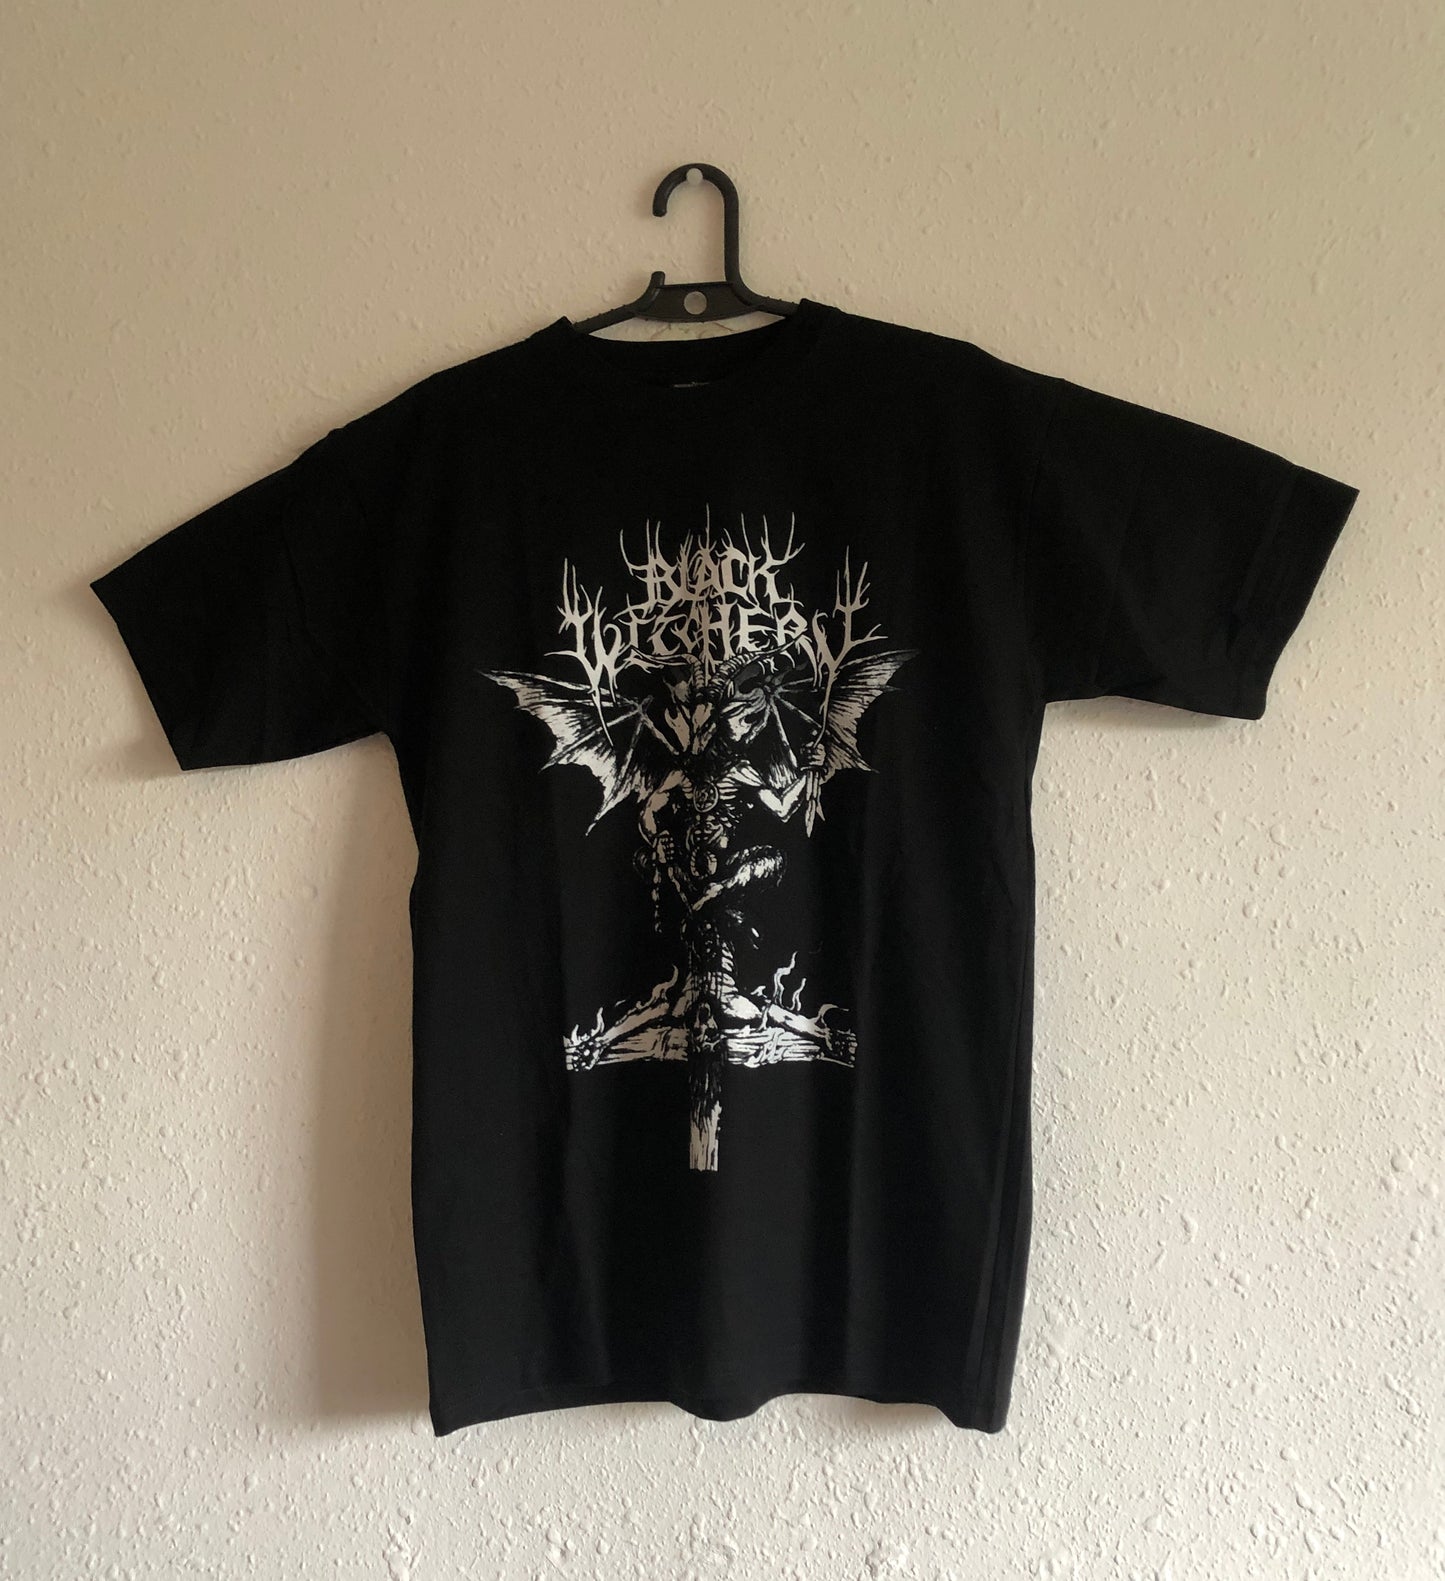 Black Witchery "Live Desecration" T-Shirt